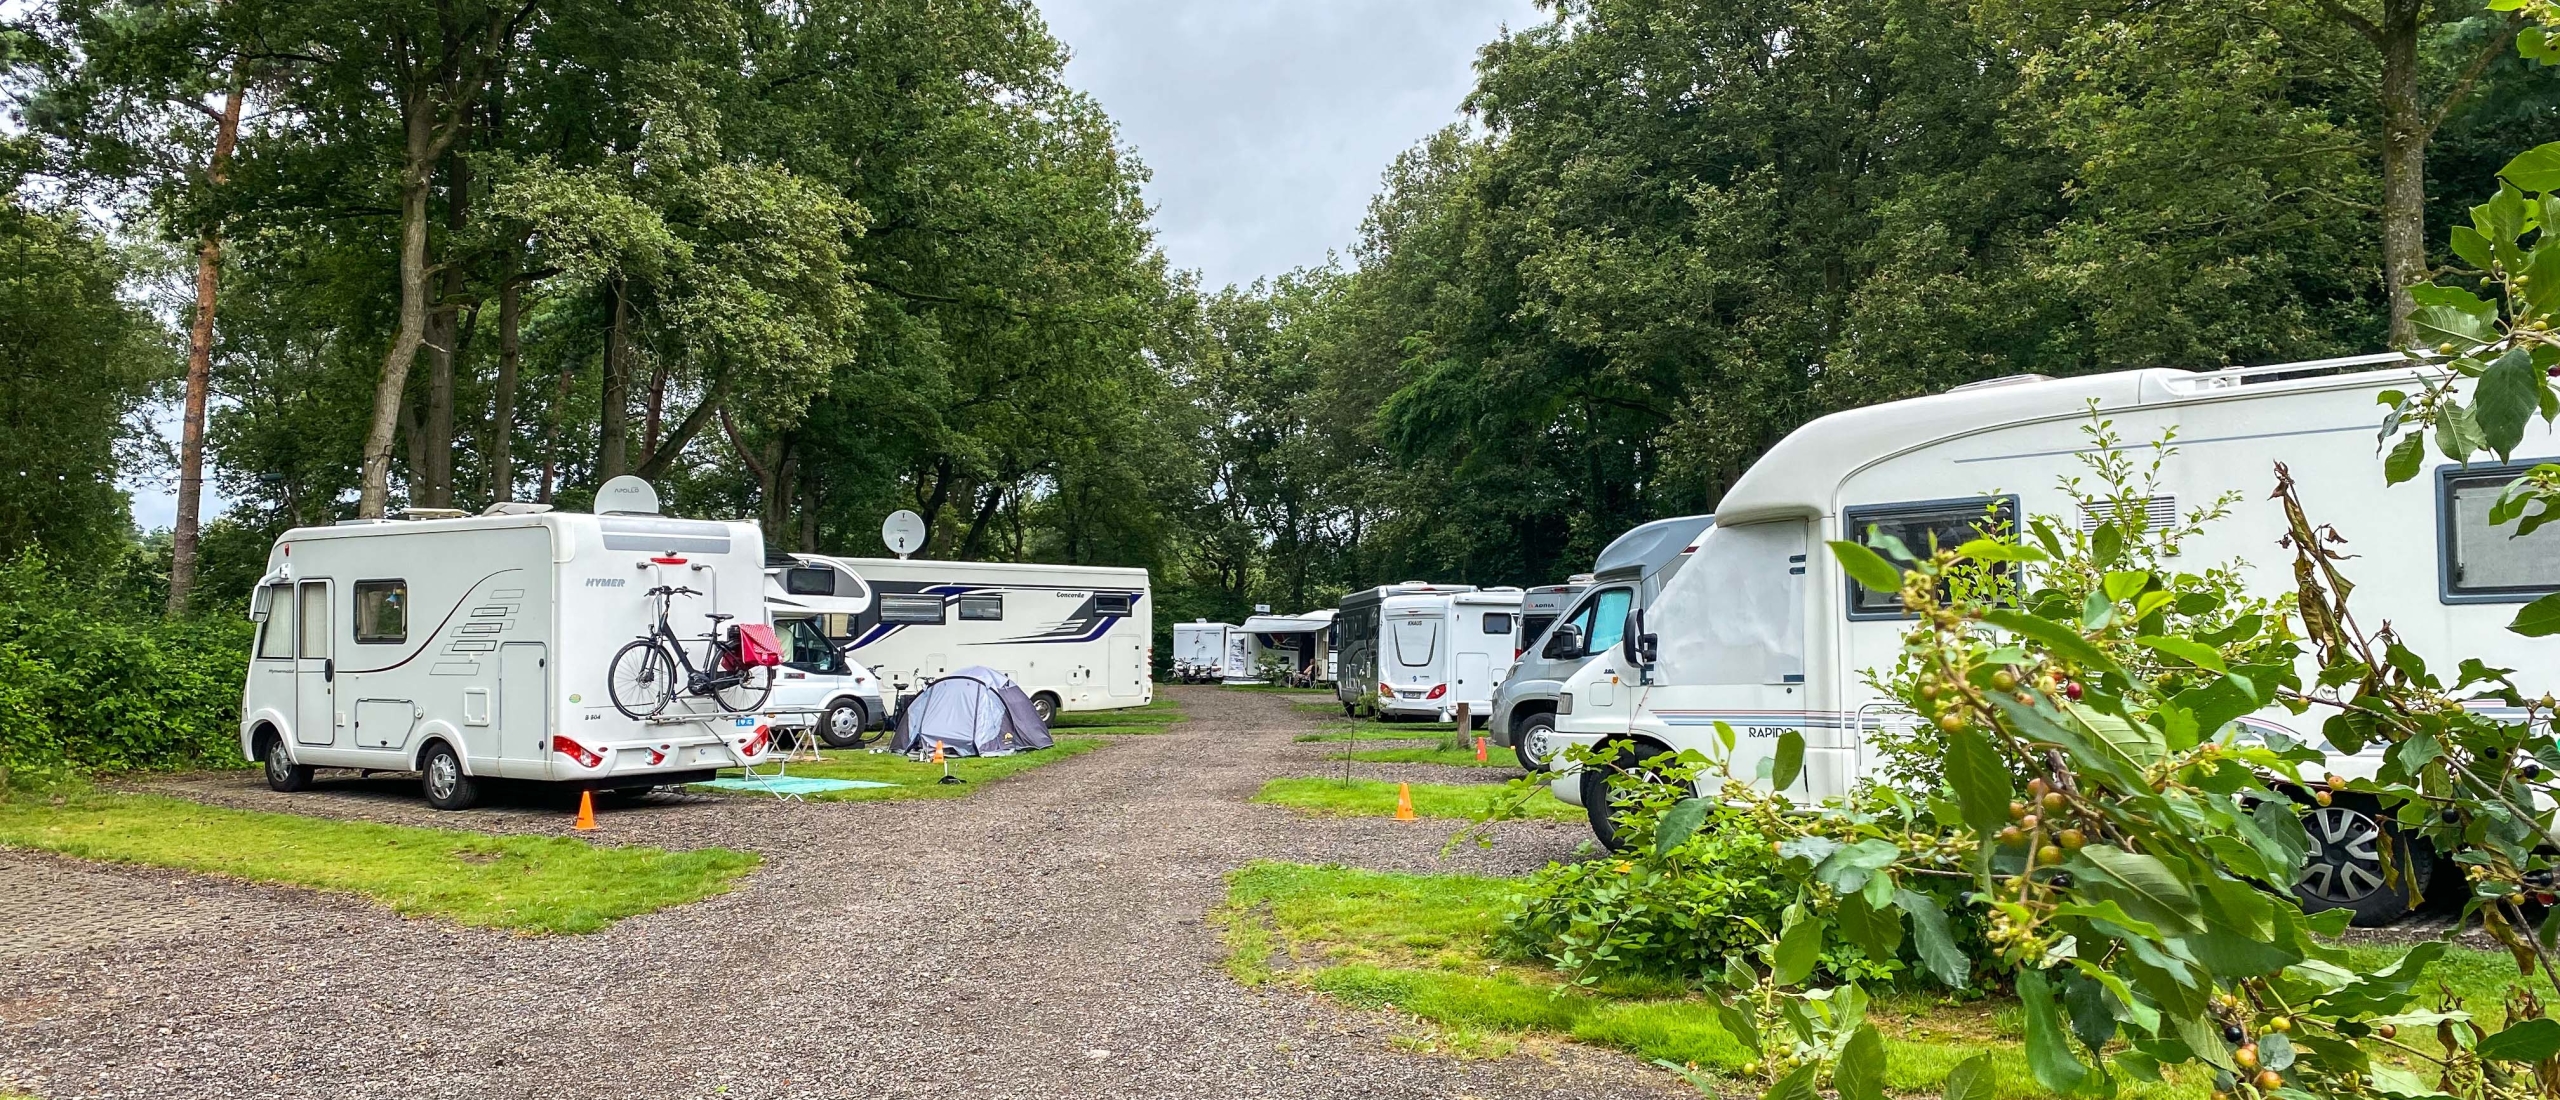 Camperpark 't Hulsbeek ligt op een unieke locatie